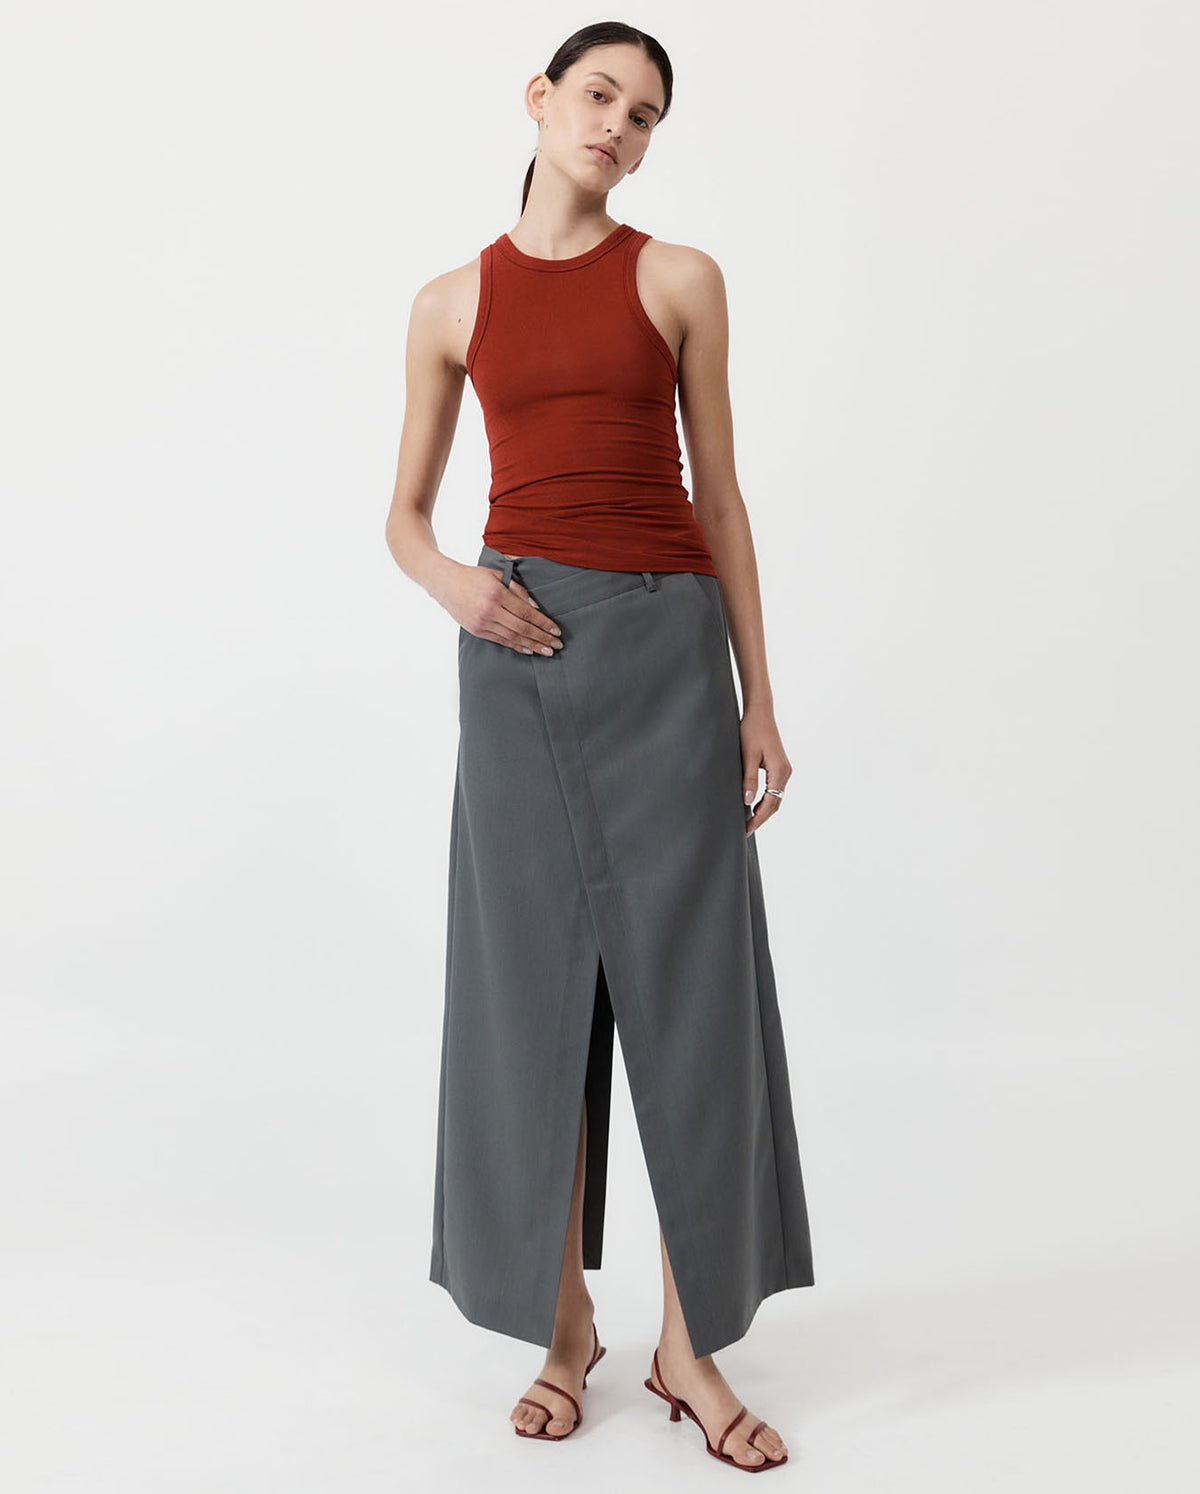 Deconstructed Waist Maxi Skirt - Pewter Grey